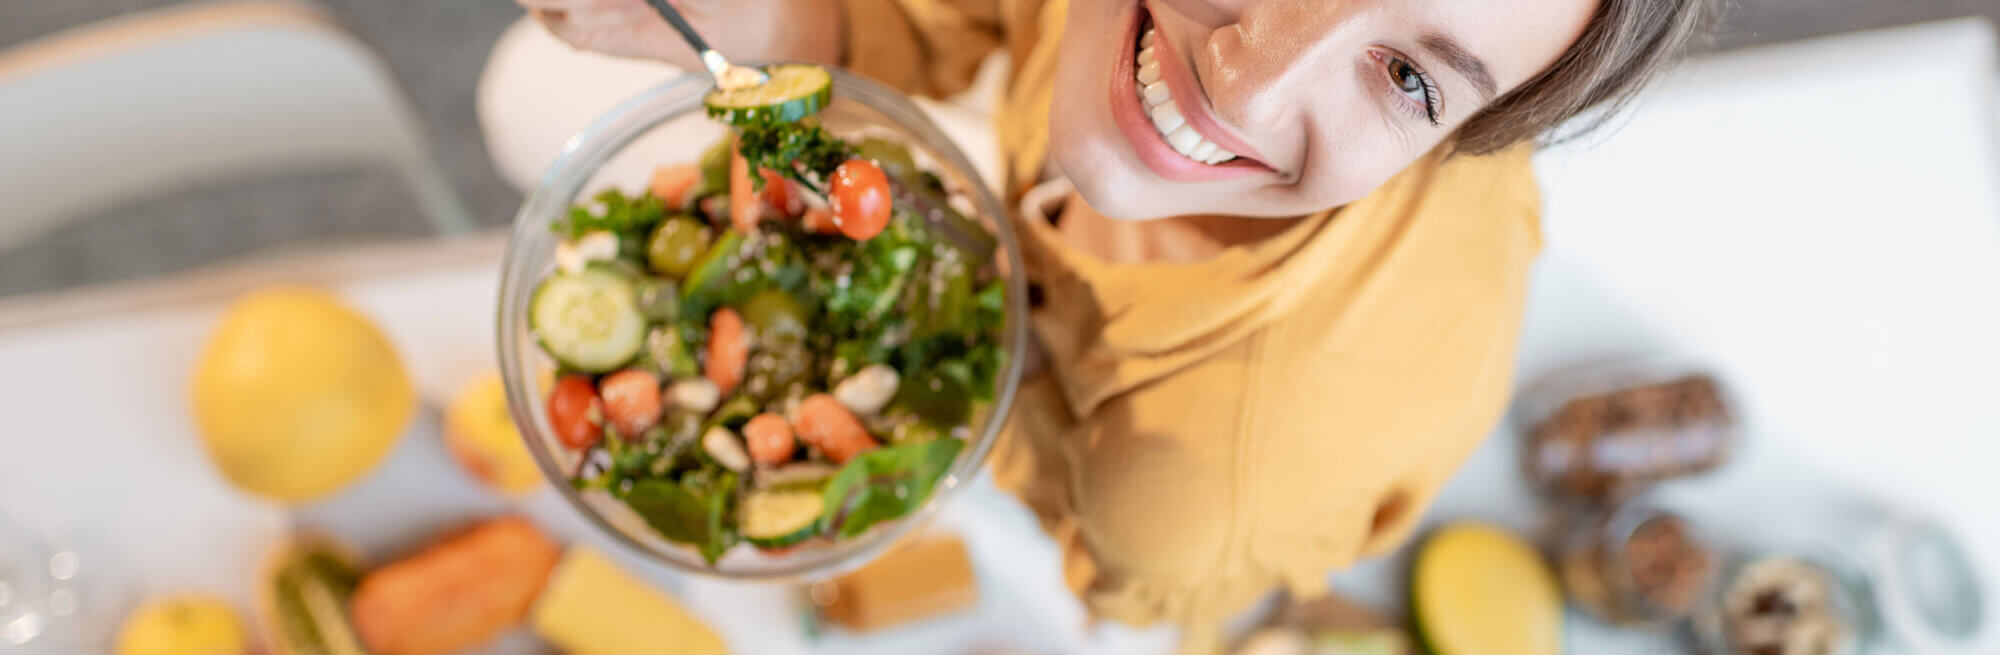 Frau mit Gemüse-Schale lächelt